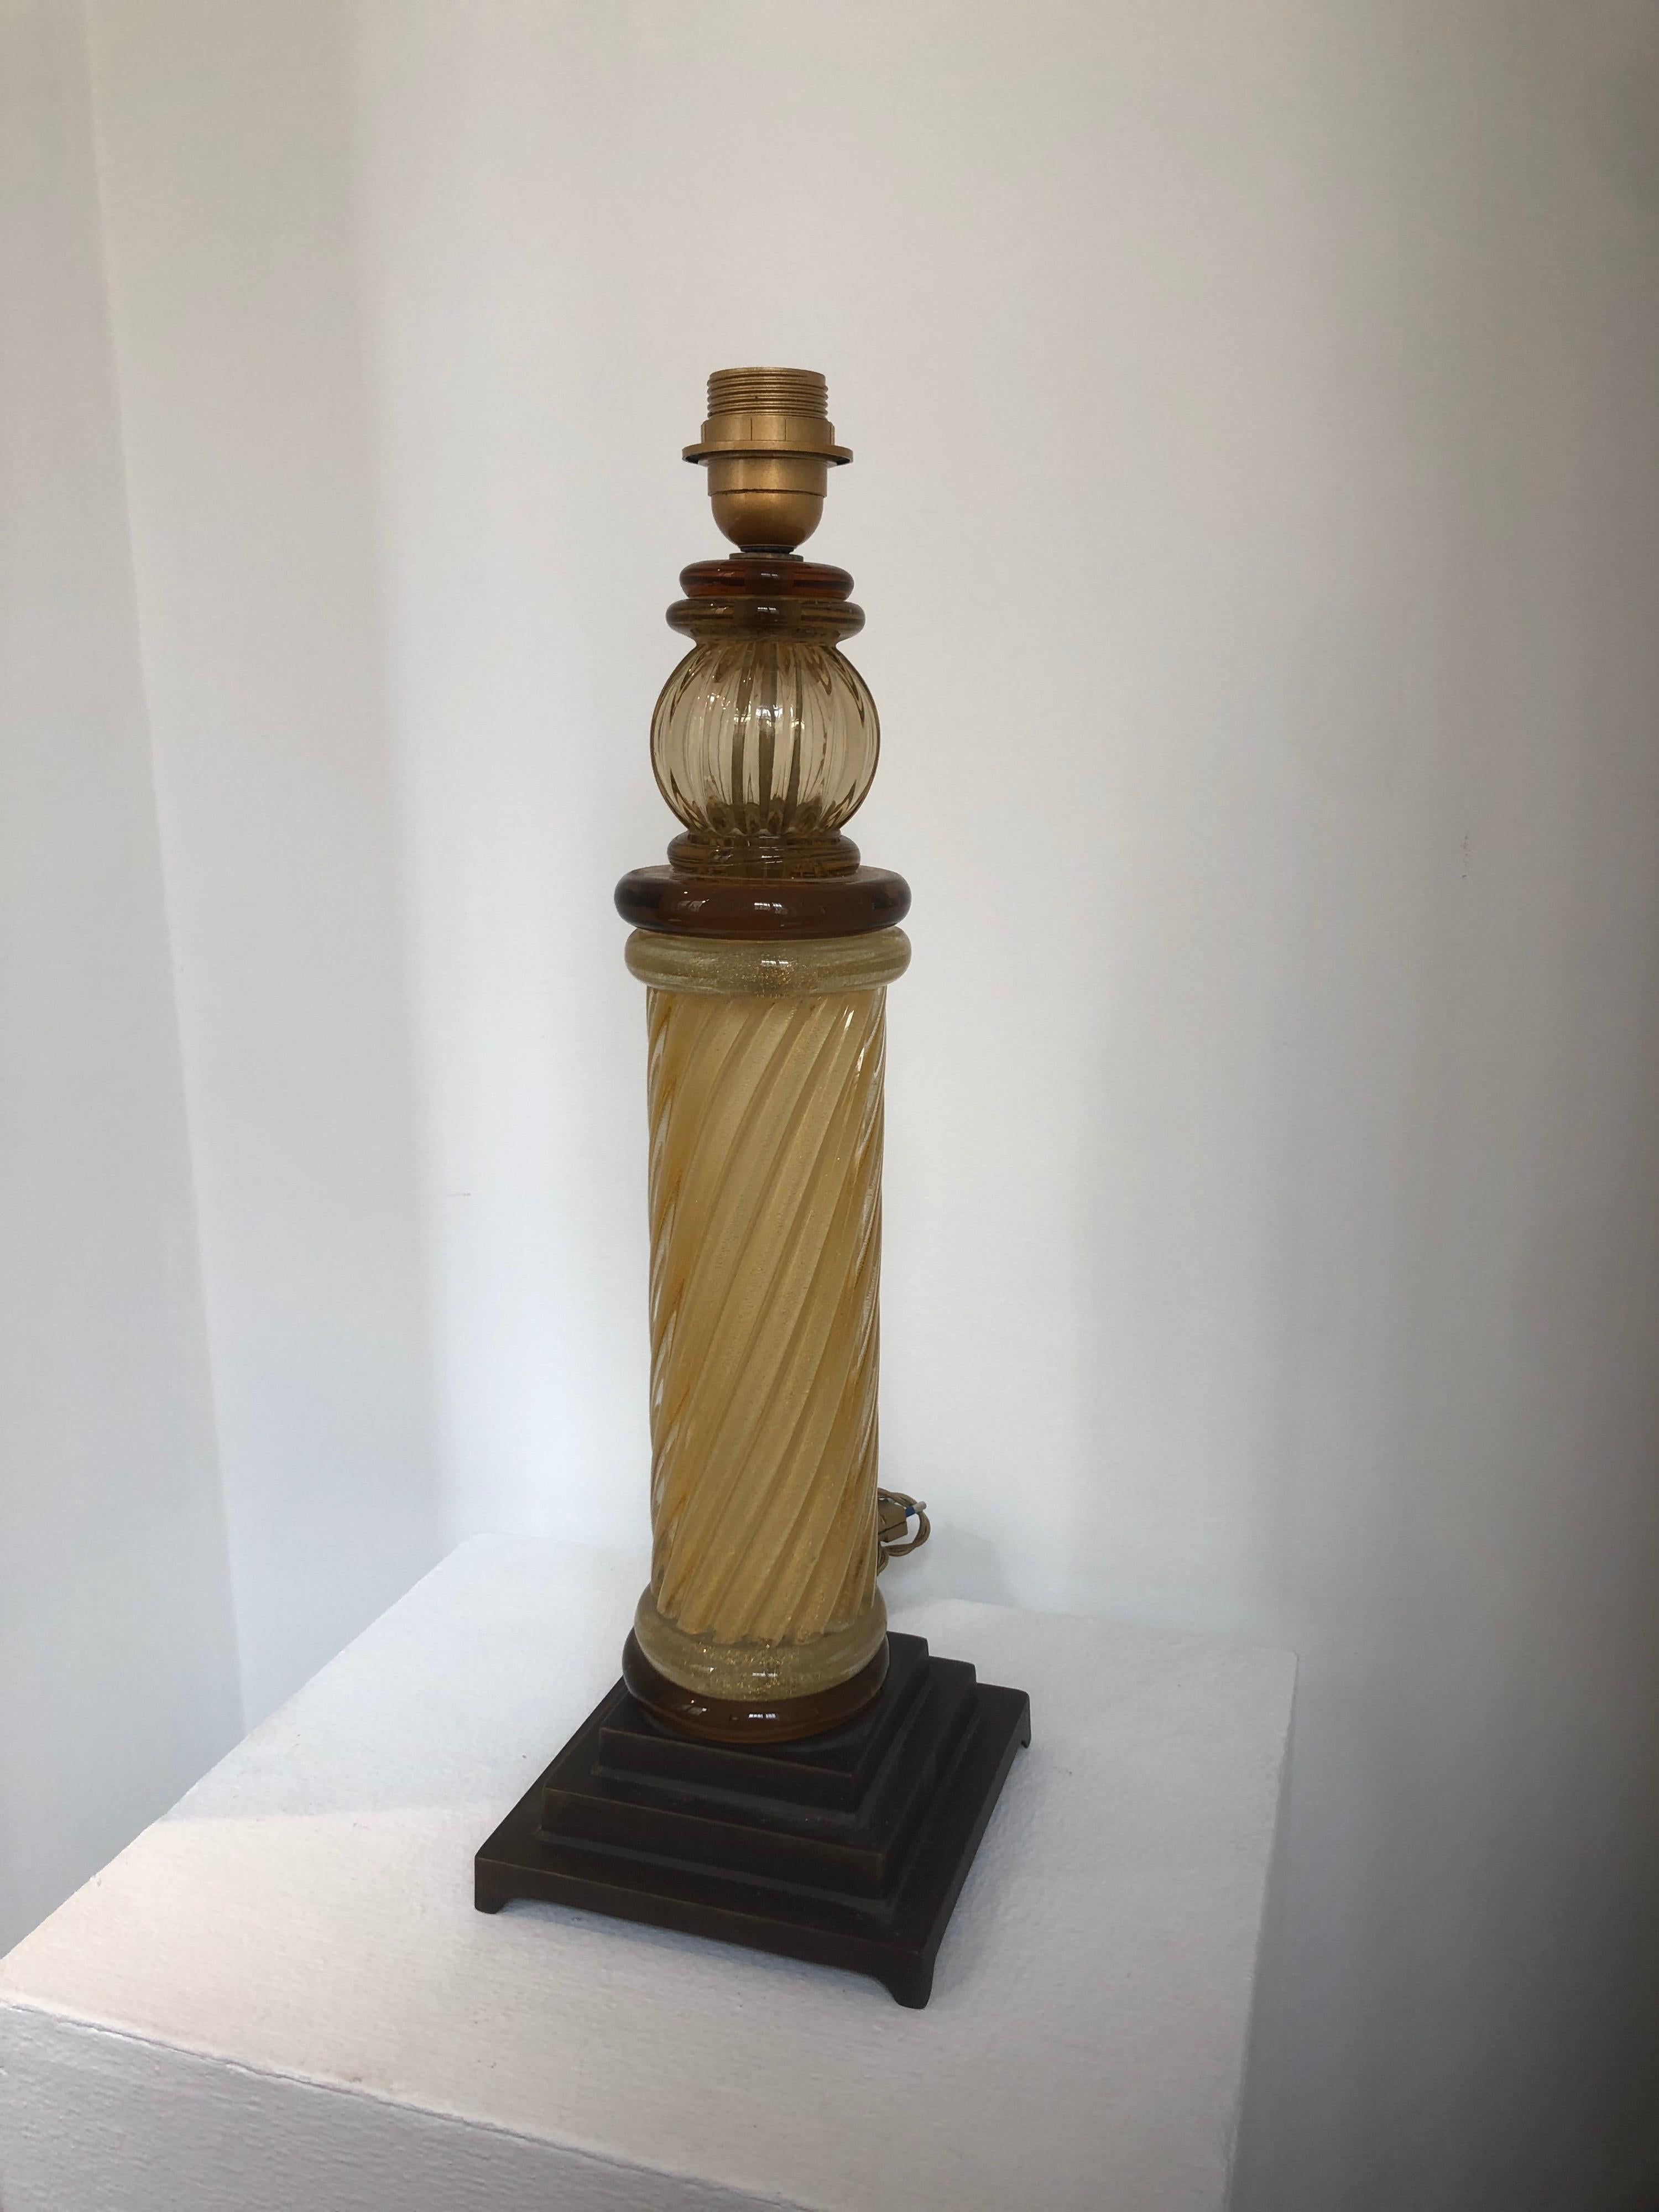 Remarquable paire de lampes de table en forme de colonnes torsadées en verre ambré de Murano Seguso, vers 1950-1960. Les lampes reposent sur des bases en métal bronzé patiné et conservent toute leur originalité avec sa colonne centrale en verre de